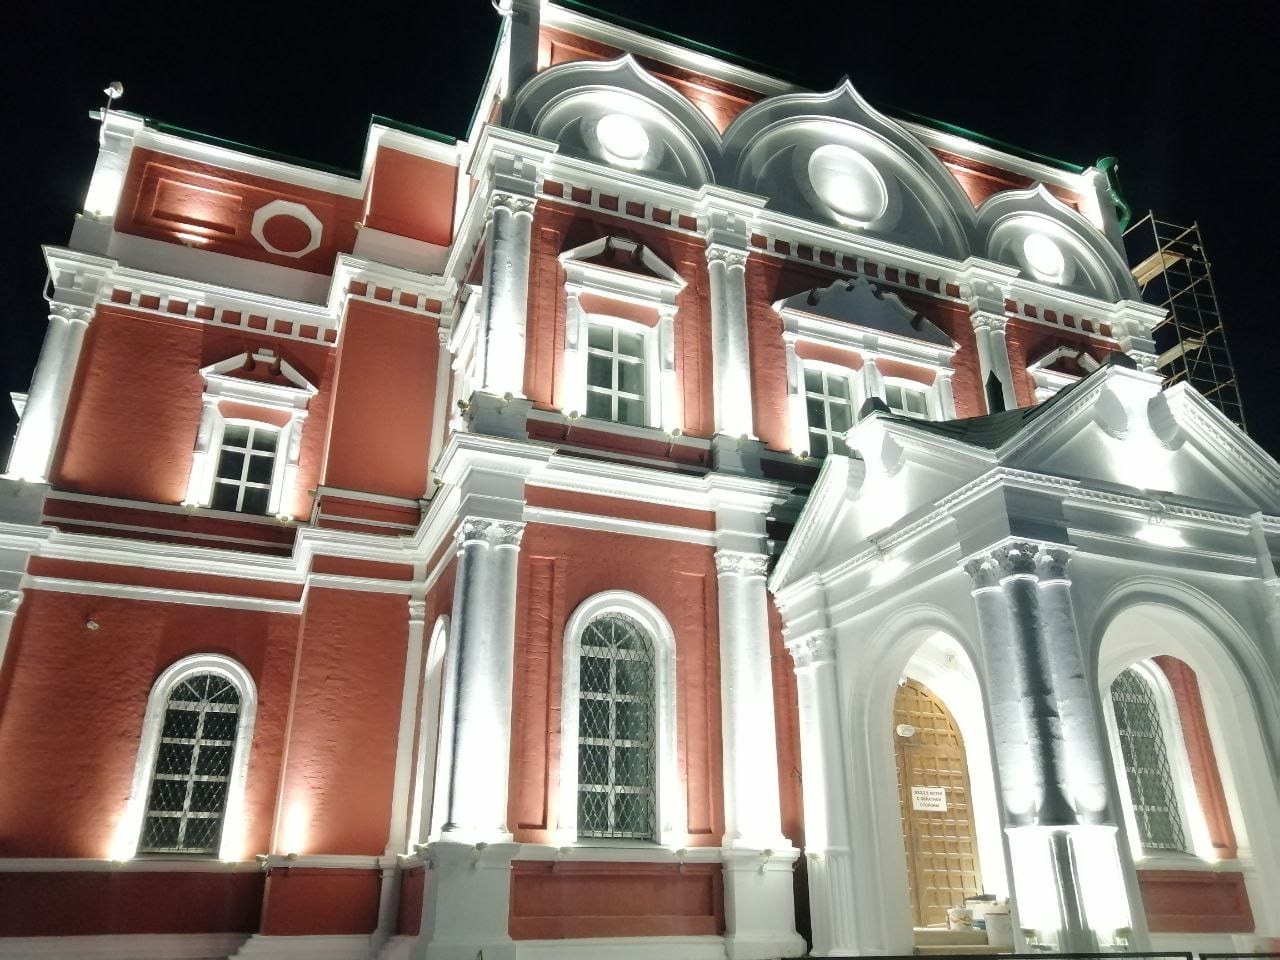 Богоявленский собор тульского кремля украсила архитектурная подсветка